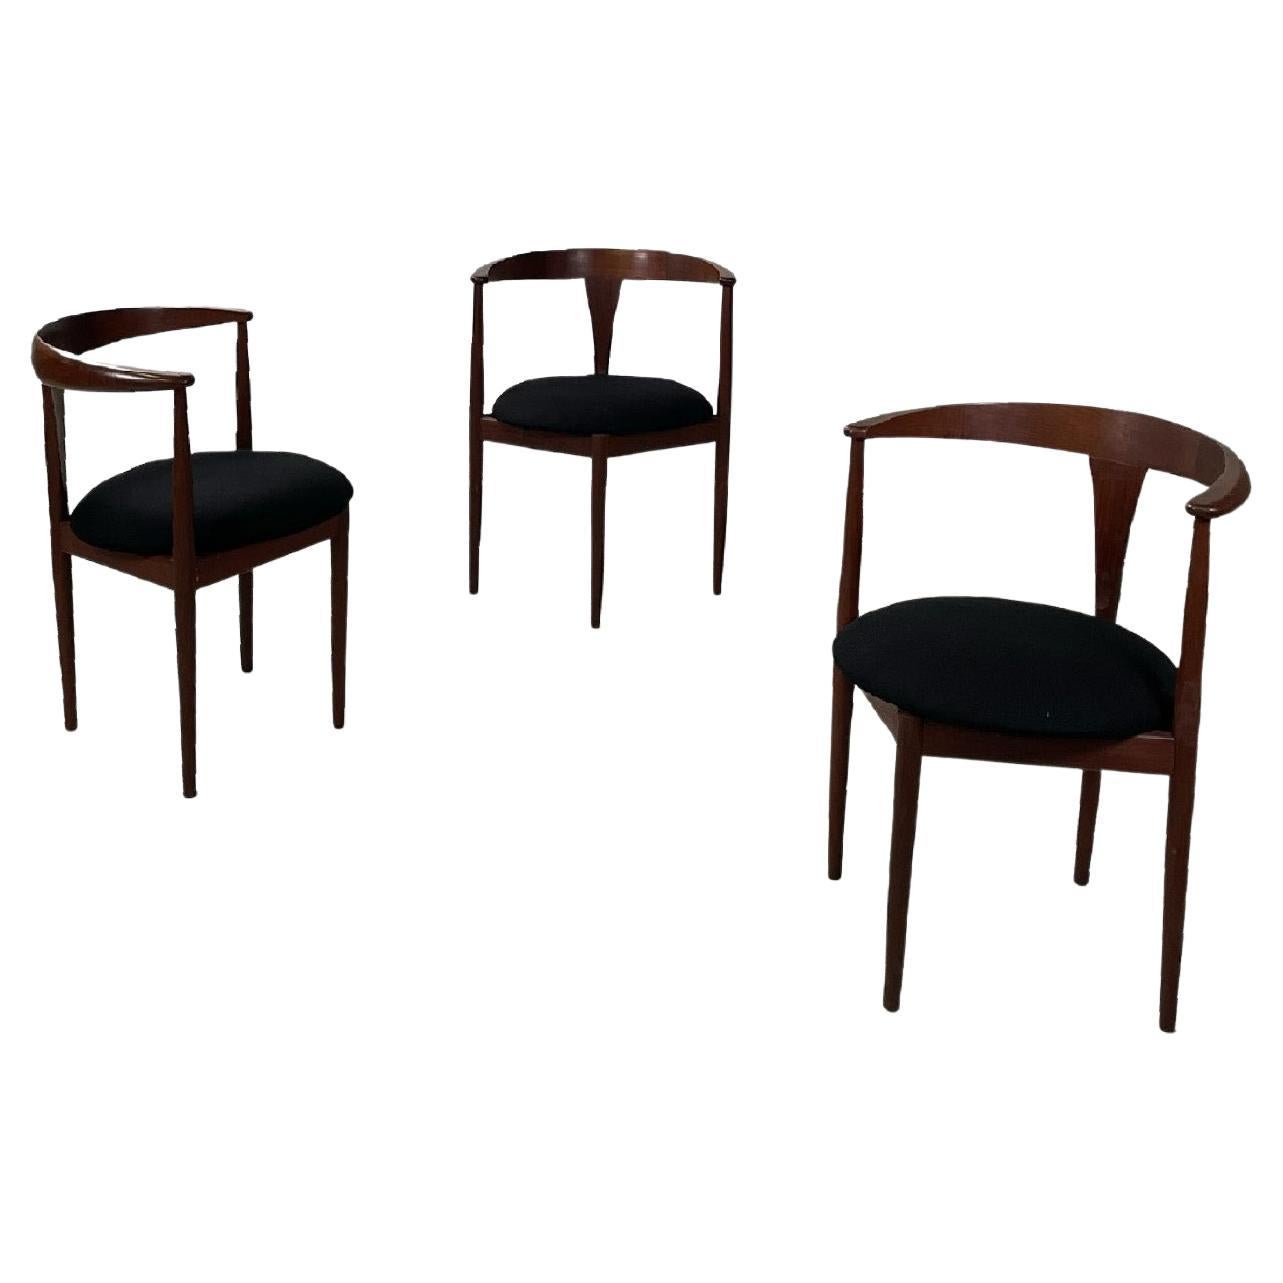 Solid teak wood chairs by Vilhelm Wohlert for Paul Jeppesen Mobelfabrik, 1960s